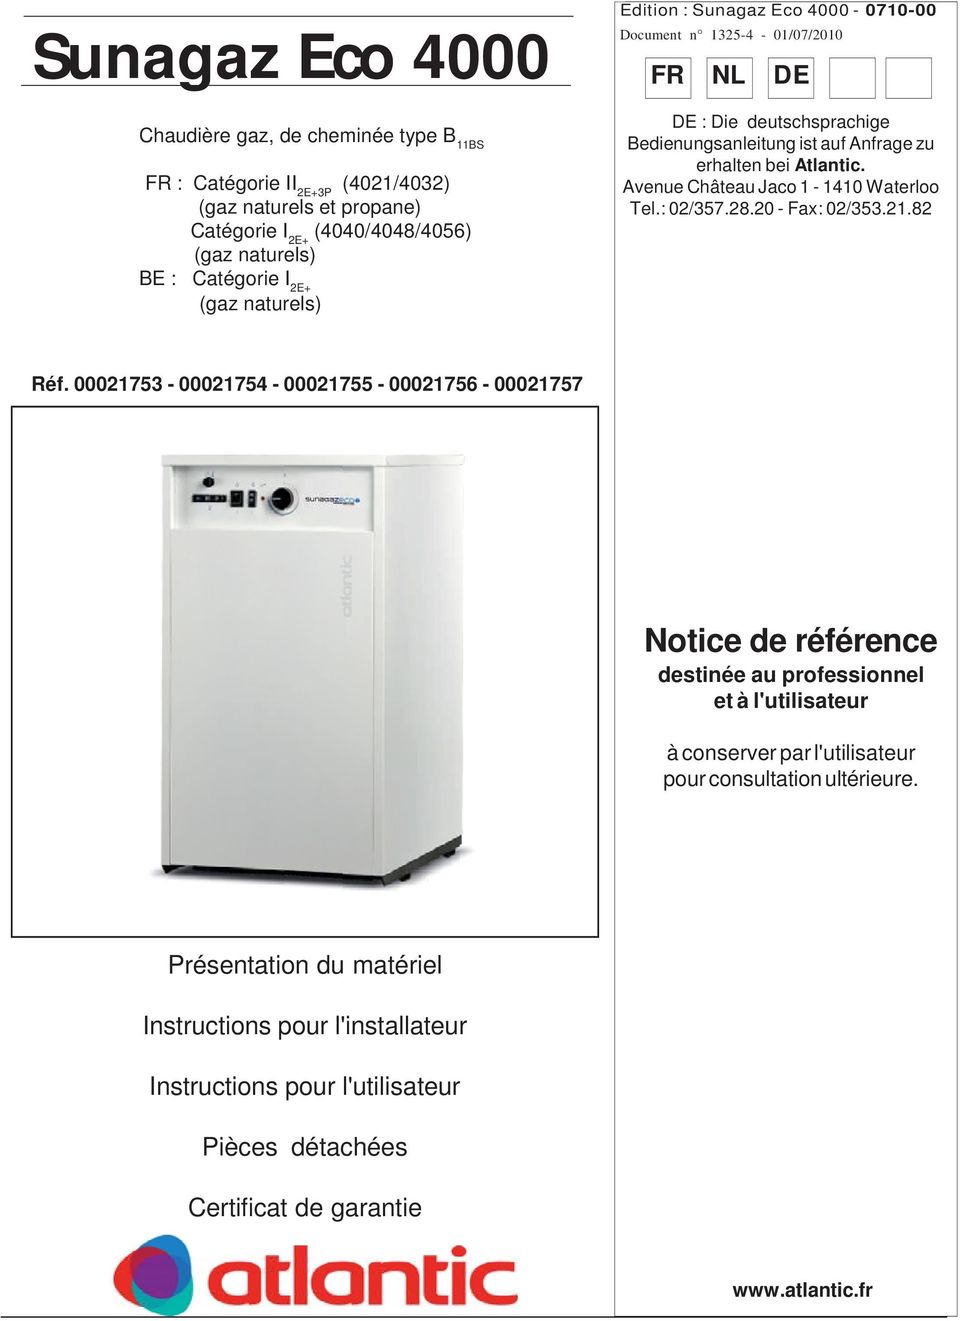 naturels) BE : Catégorie I E+ (gaz naturels) : Sunagaz Eco 4000-070-00 Document n 35-4 - 0/07/00 FR NL DE DE : Die deutschsprachige Bedienungsanleitung ist auf Anfrage zu erhalten bei Atlantic.